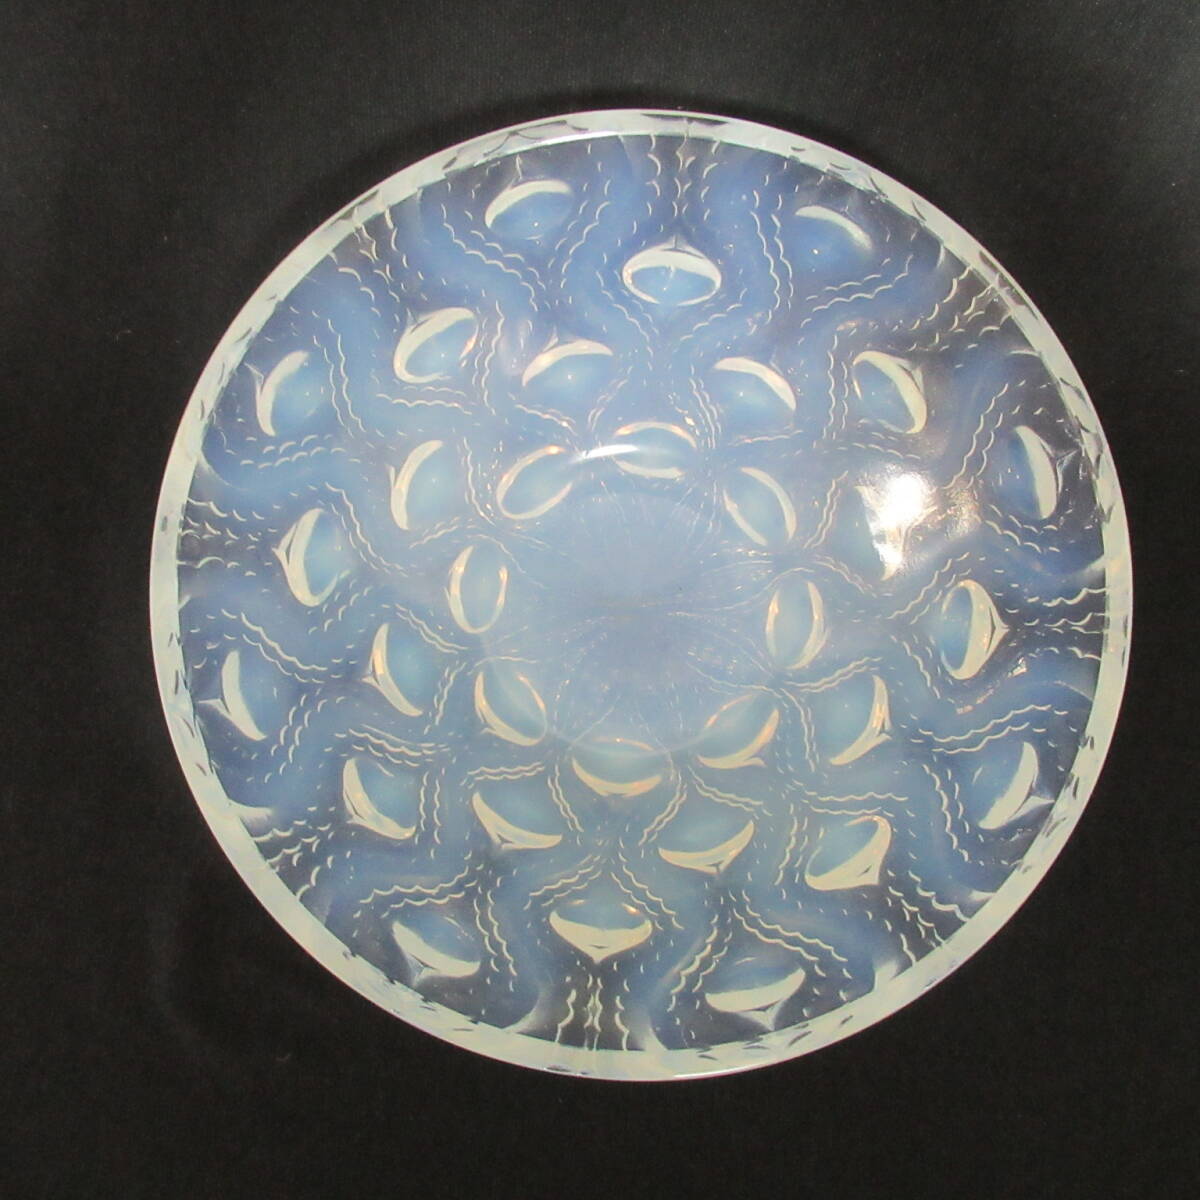  Rene *lalik миска Bulbes No.2 crystal стекло античный посуда европейская посуда Lalique 80 размер отправка w-2722130-078-mrrz